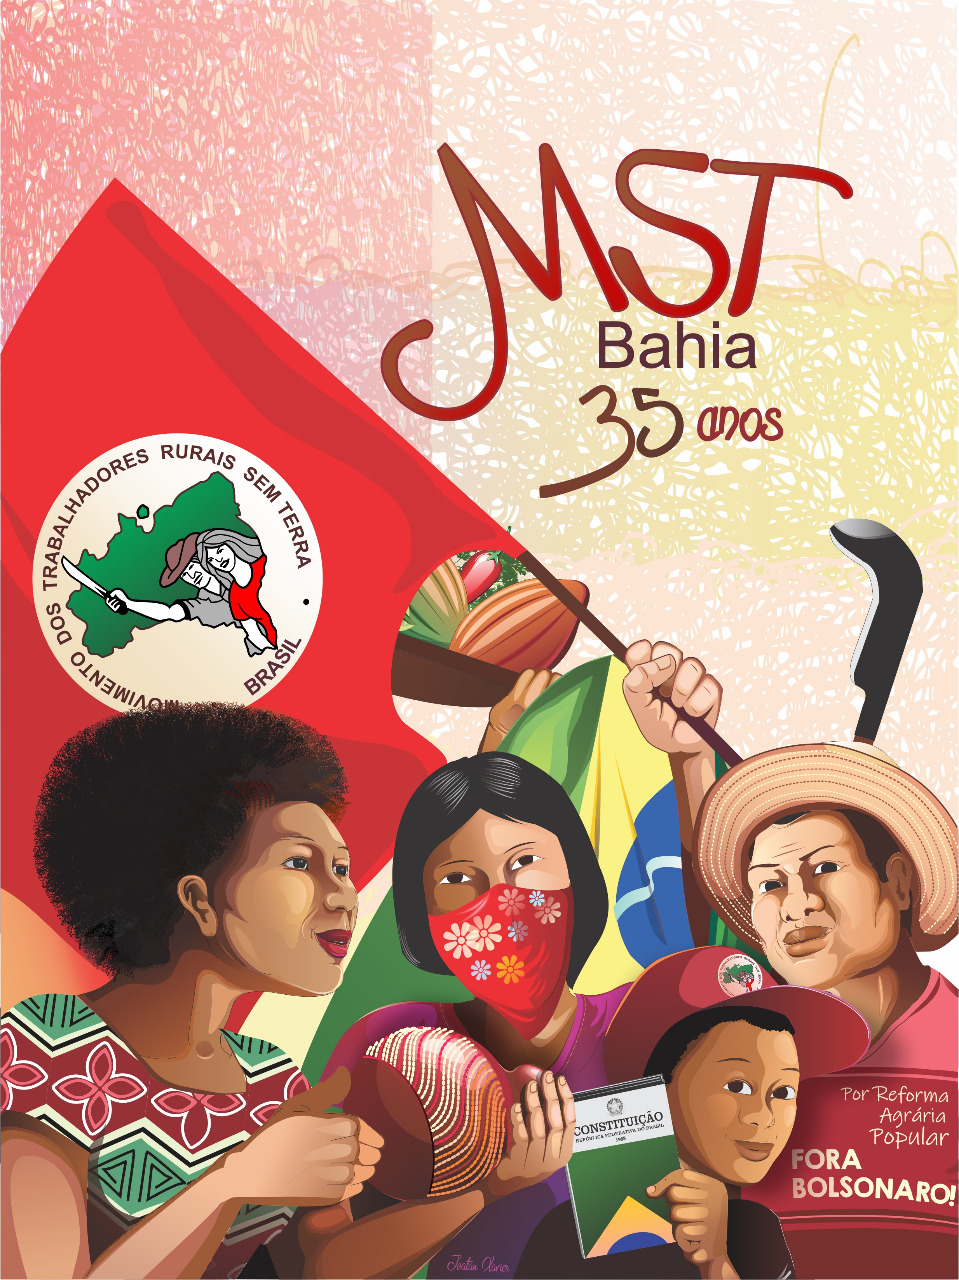 No momento você está vendo MST na Bahia comemora 35 anos de luta e resistência